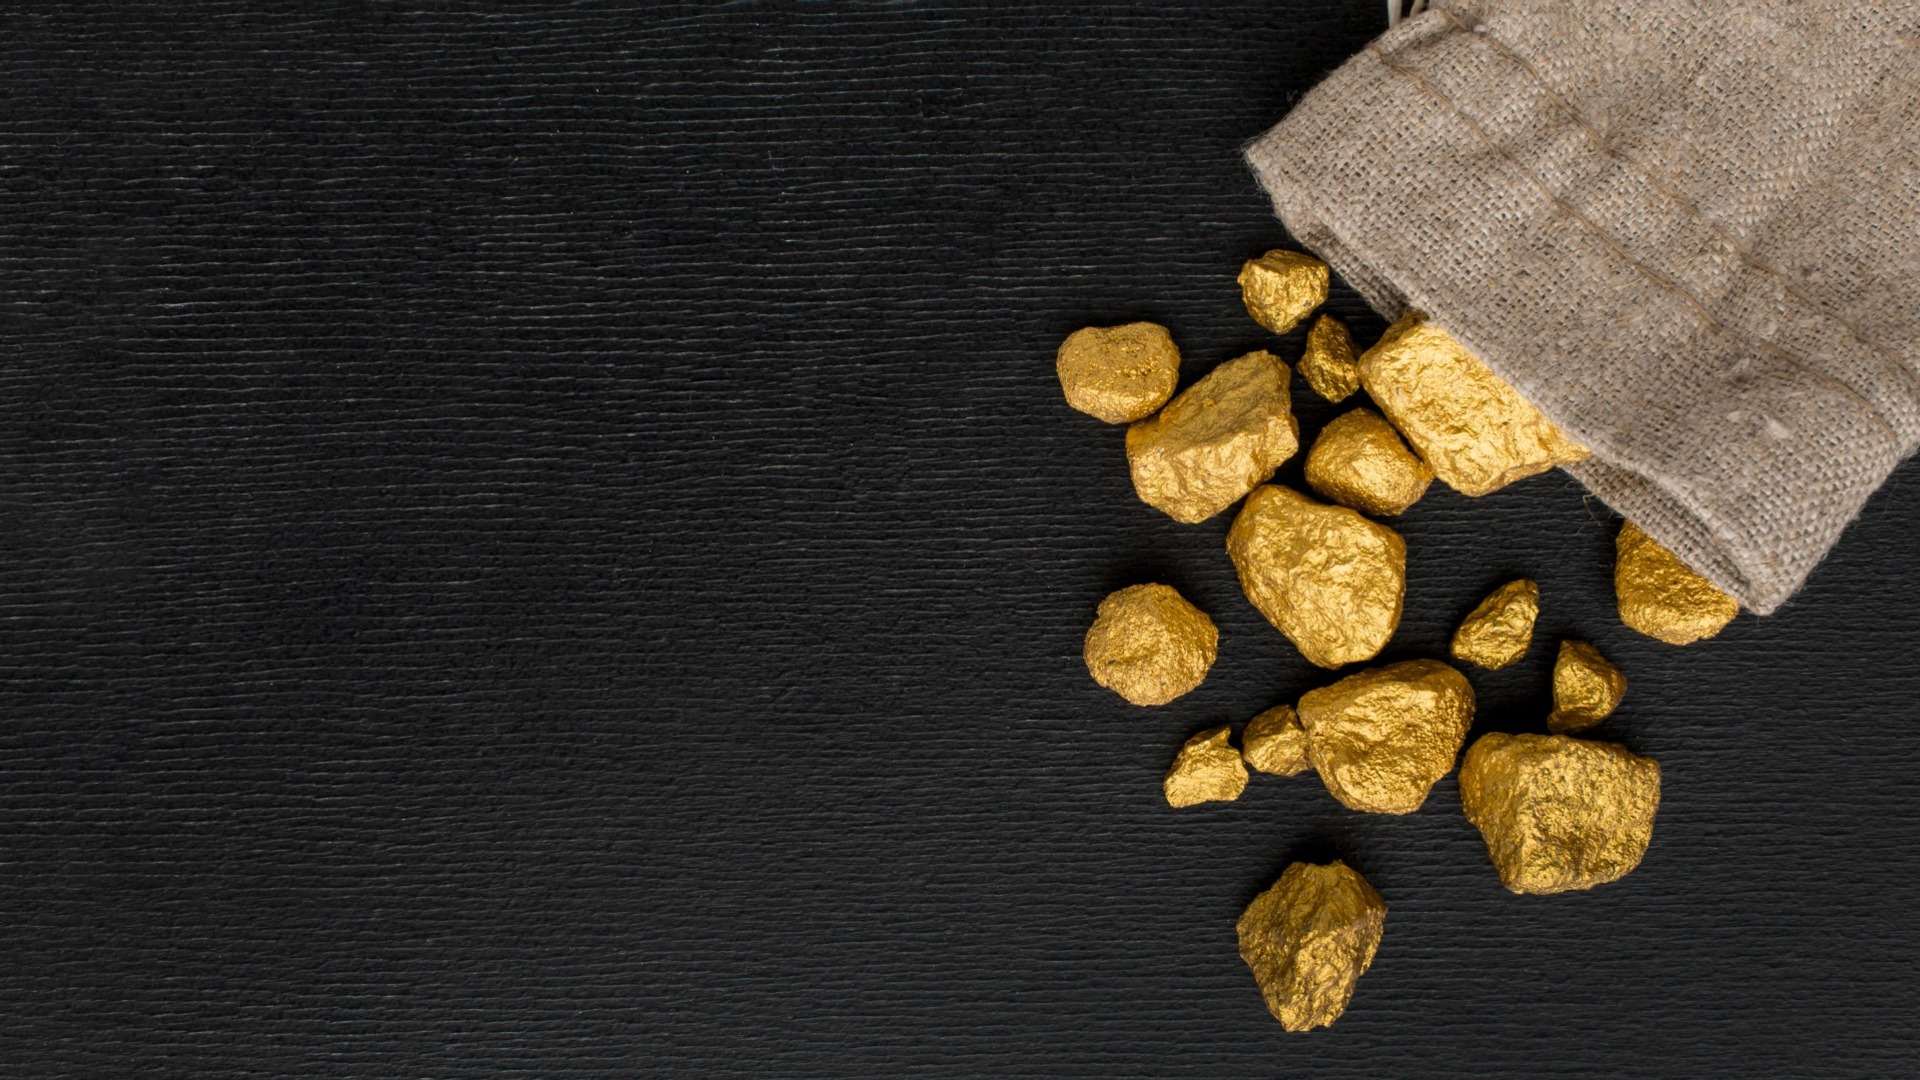 Добыча золота на огромном месторождении в Хабаровском крае начнется через семь лет